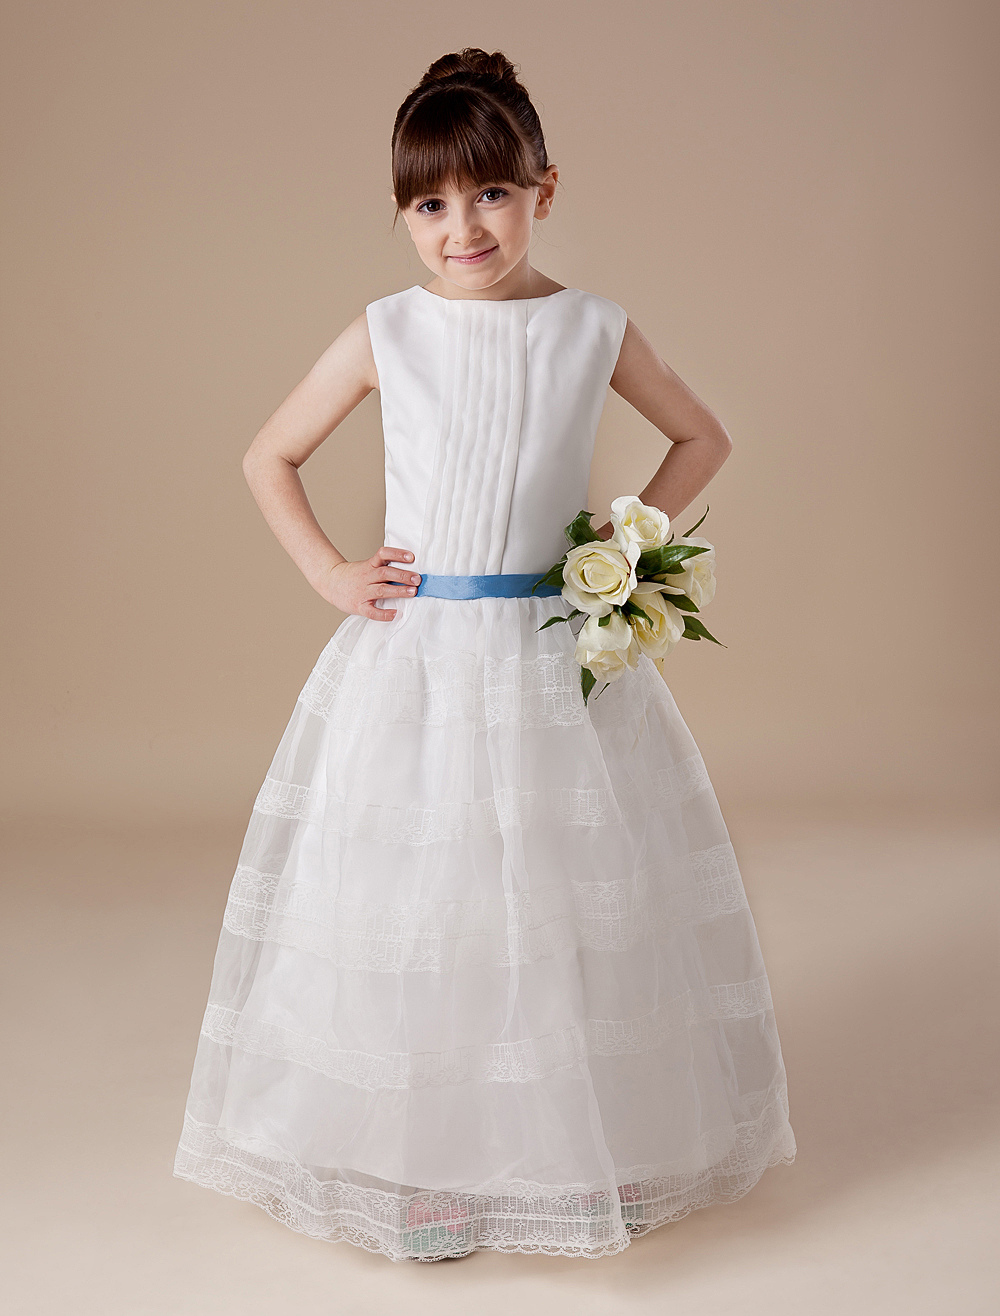 White Sleeveless Sash Satin Lace Flower Girl Dress (Wedding Flower Girl Dresses) photo